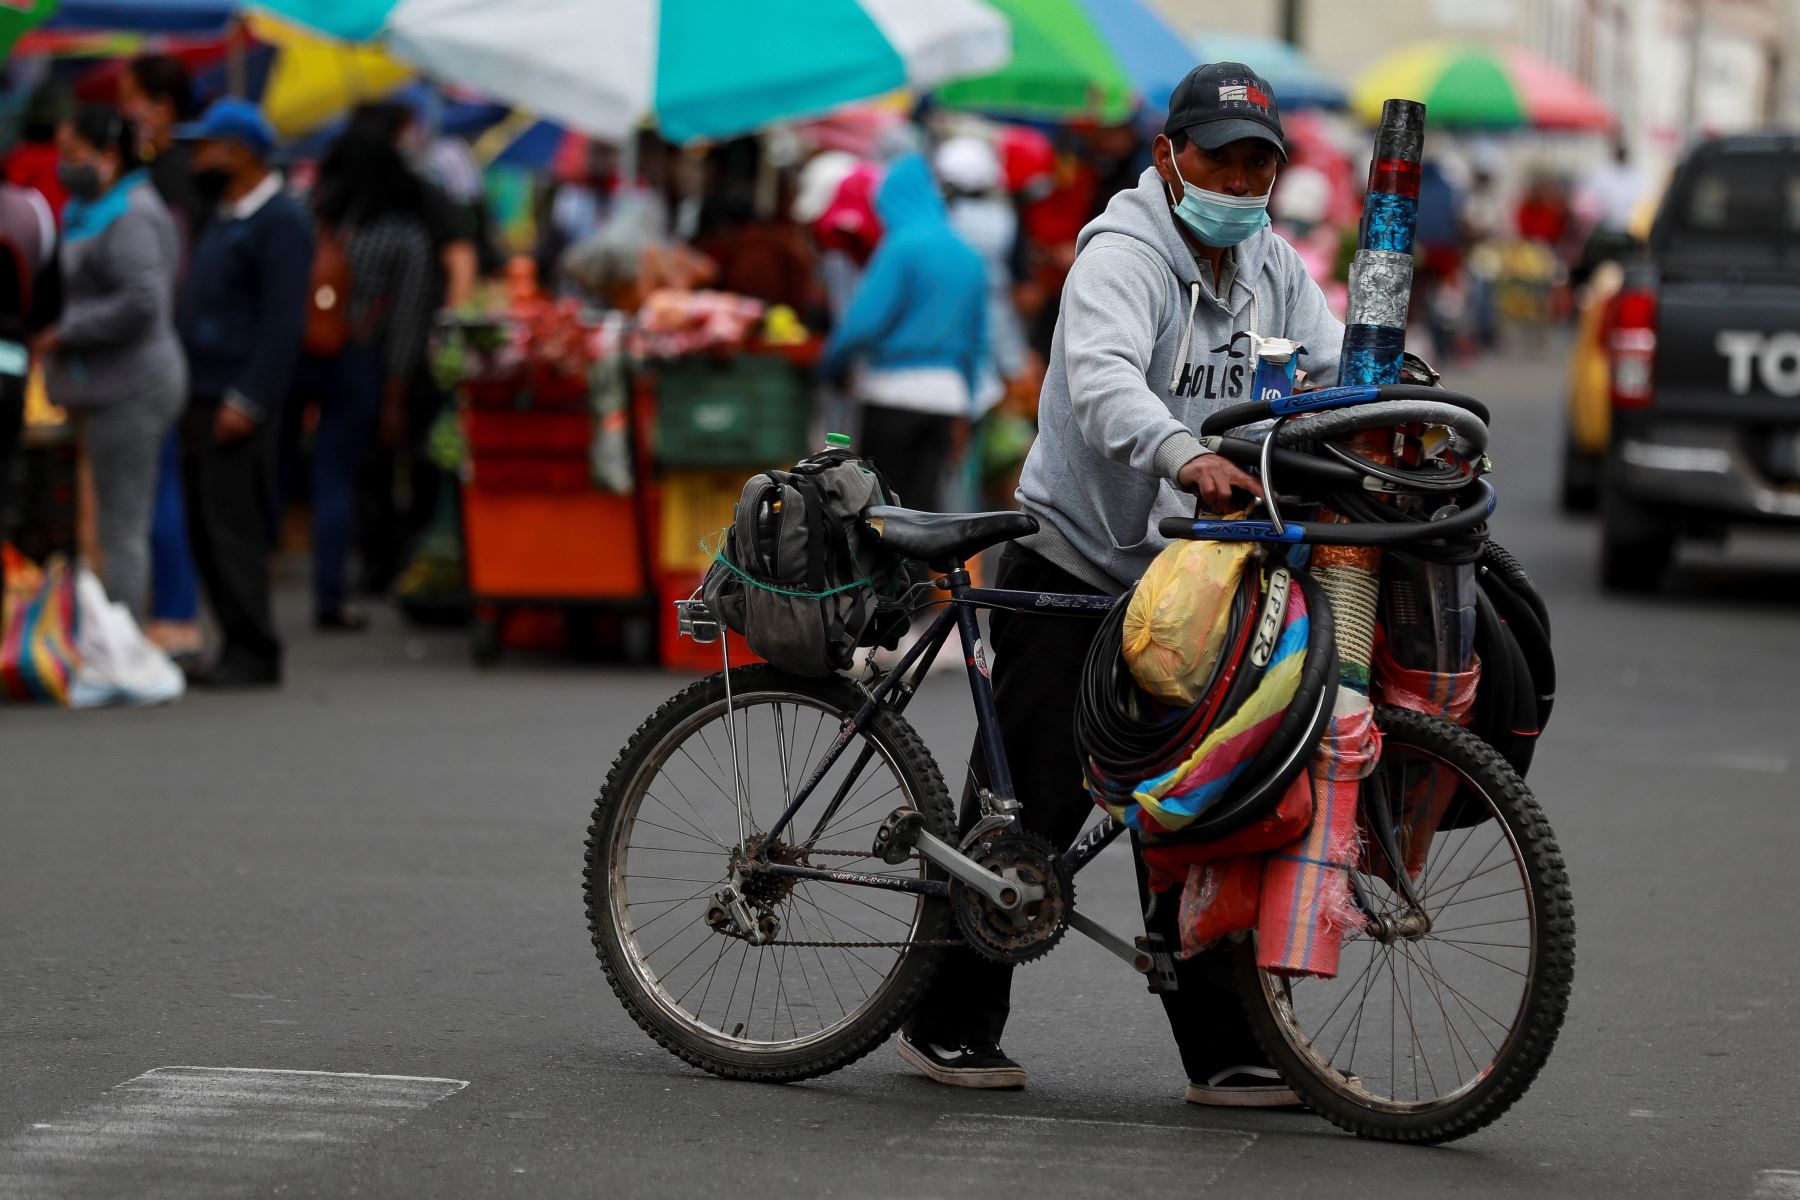 Un hombre empuja una bicicleta hoy en una calle. Foto: EFE